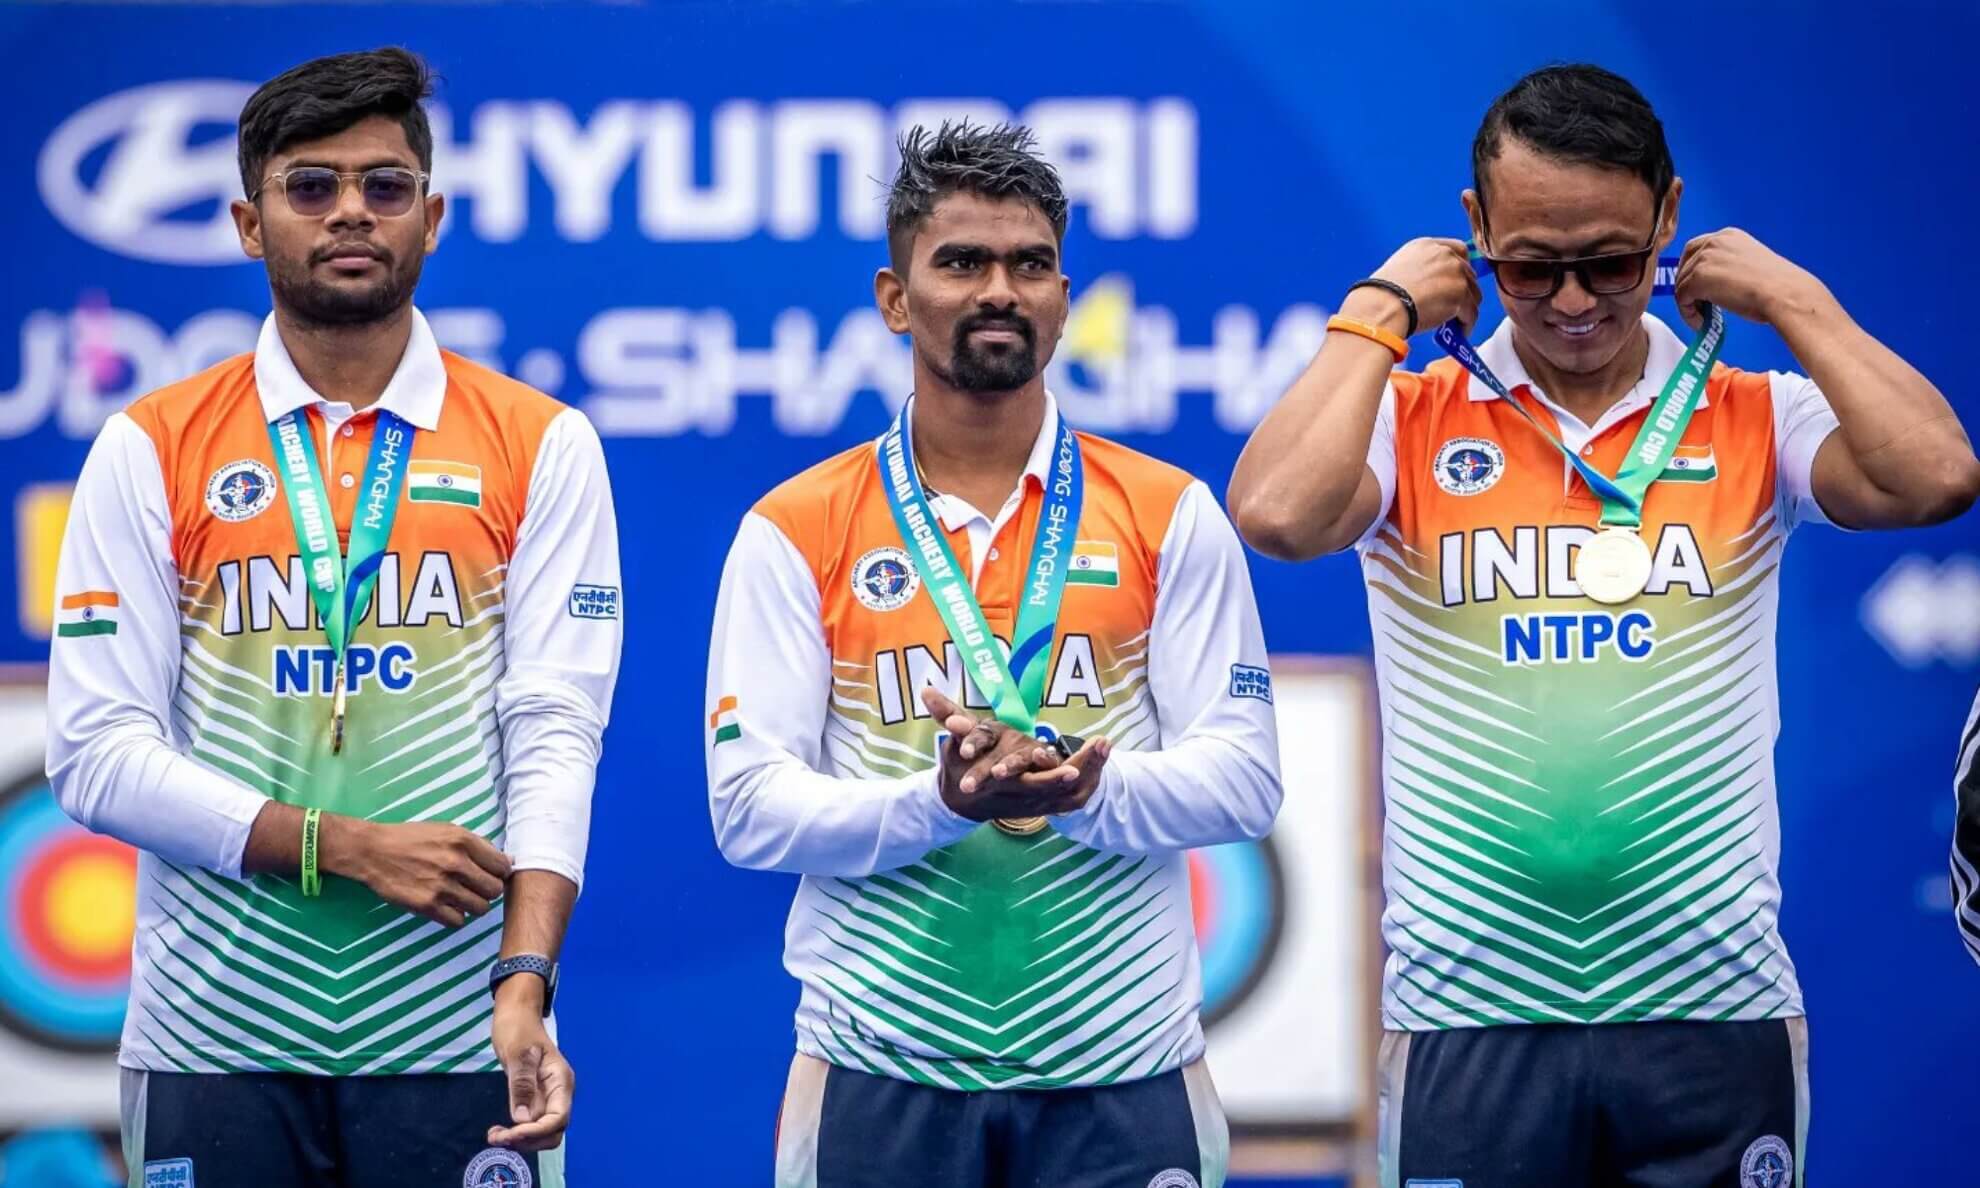 Paris Olympics 2024: Indian men